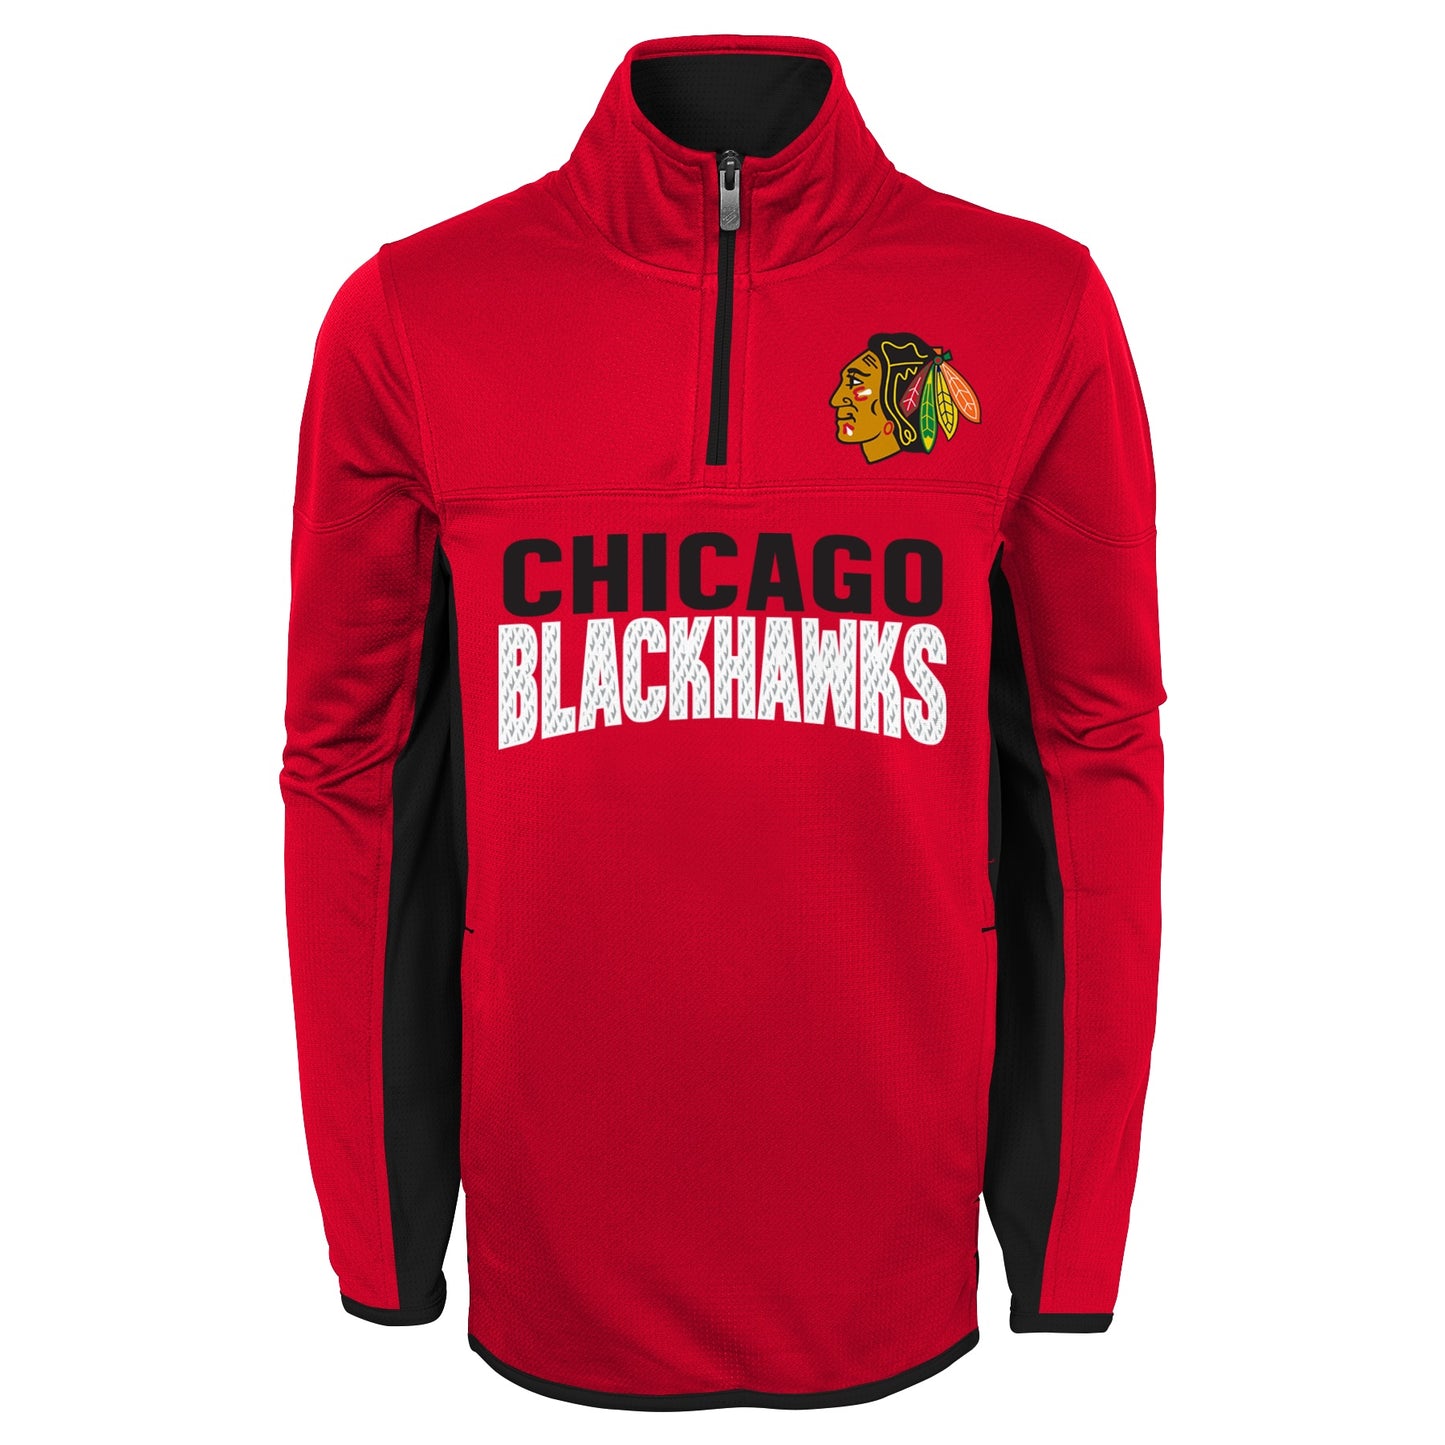 Chicago Blackhawks Child 1/4 Zip Red Fleece Top